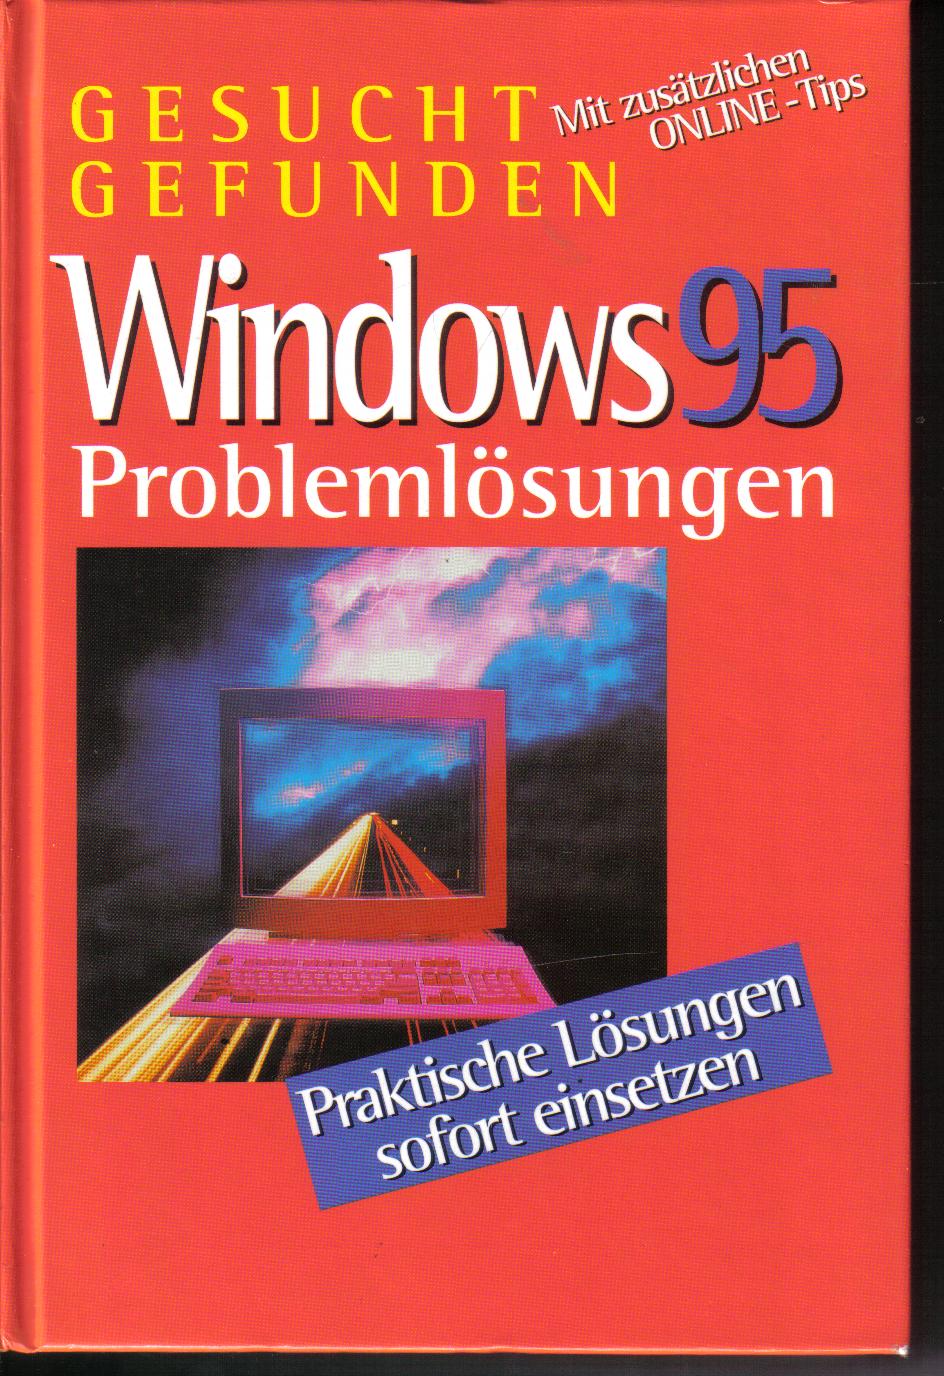 Windows 95Problemloesungen